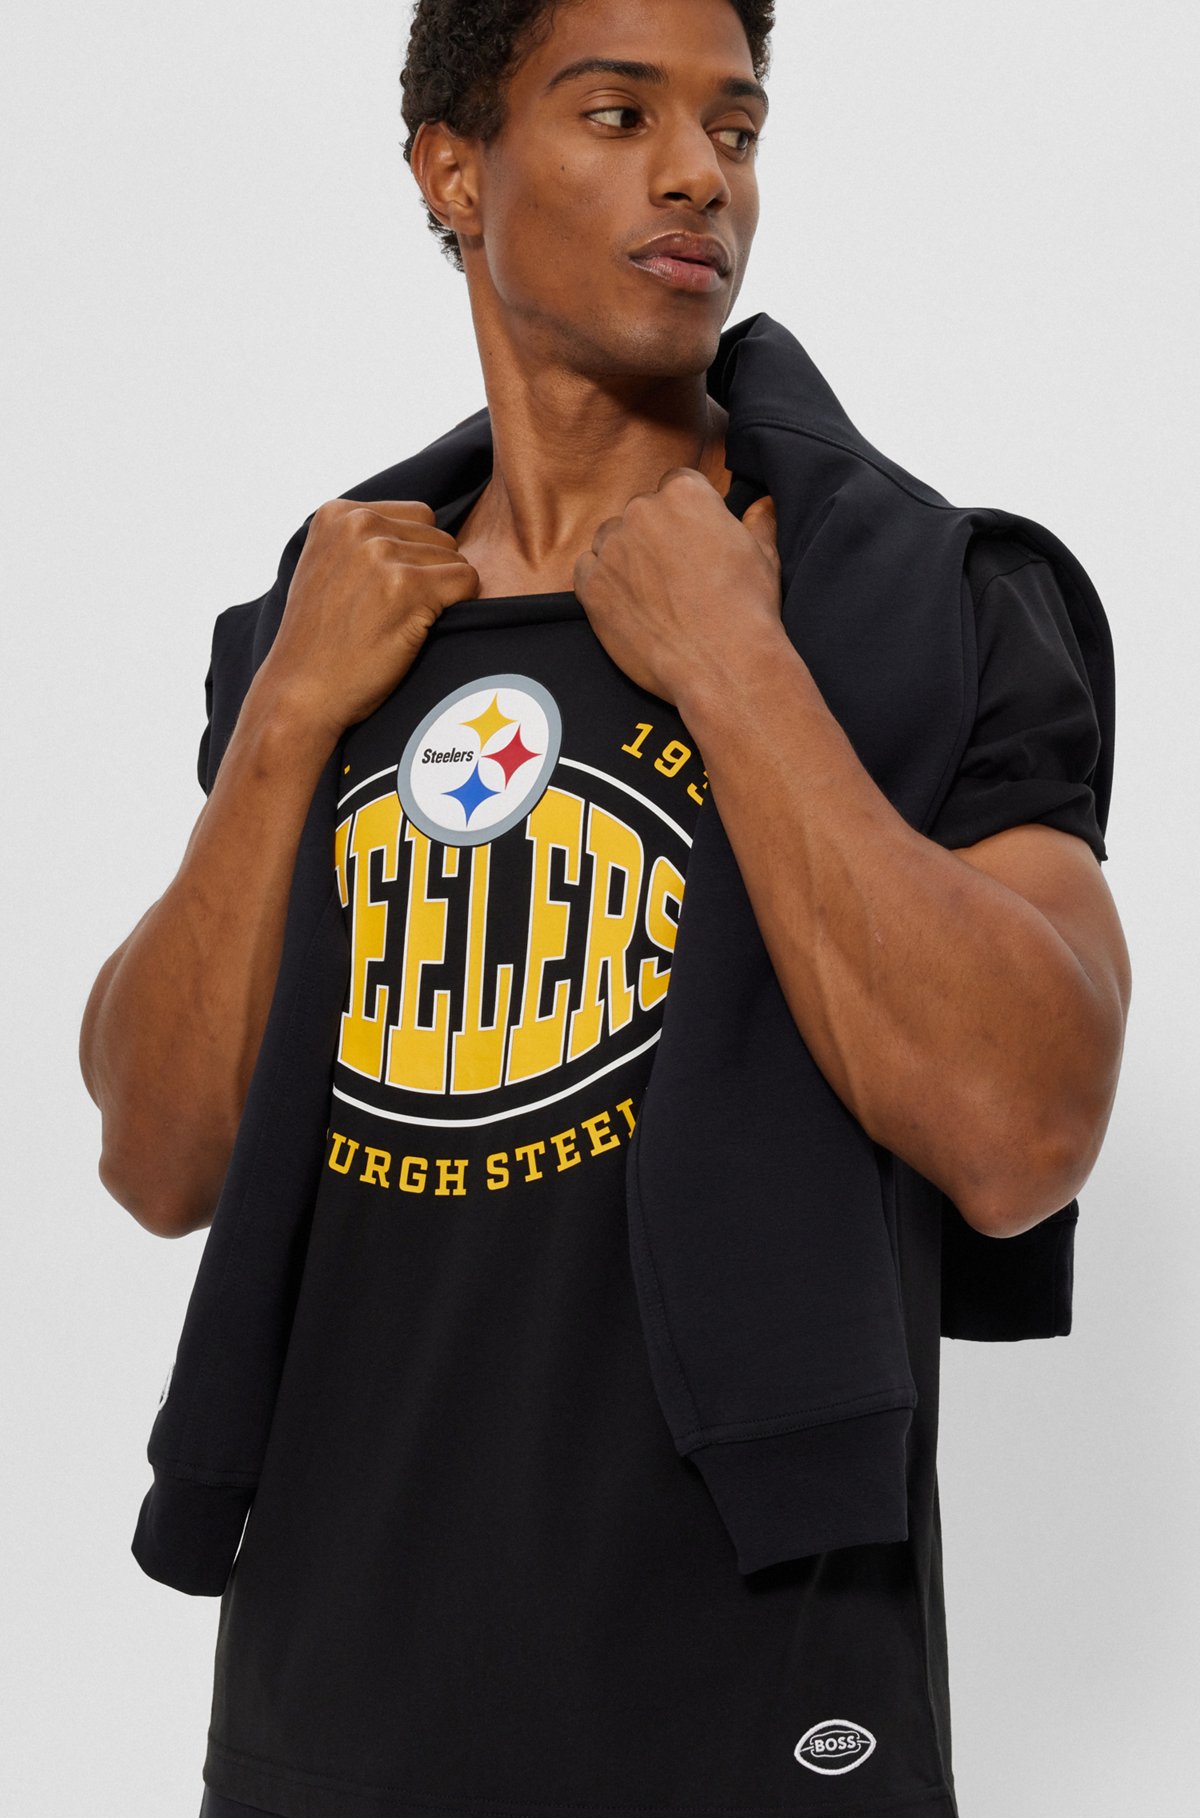  Camiseta de algodón elástico BOSS x NFL con detalle de la colaboración, Steelers